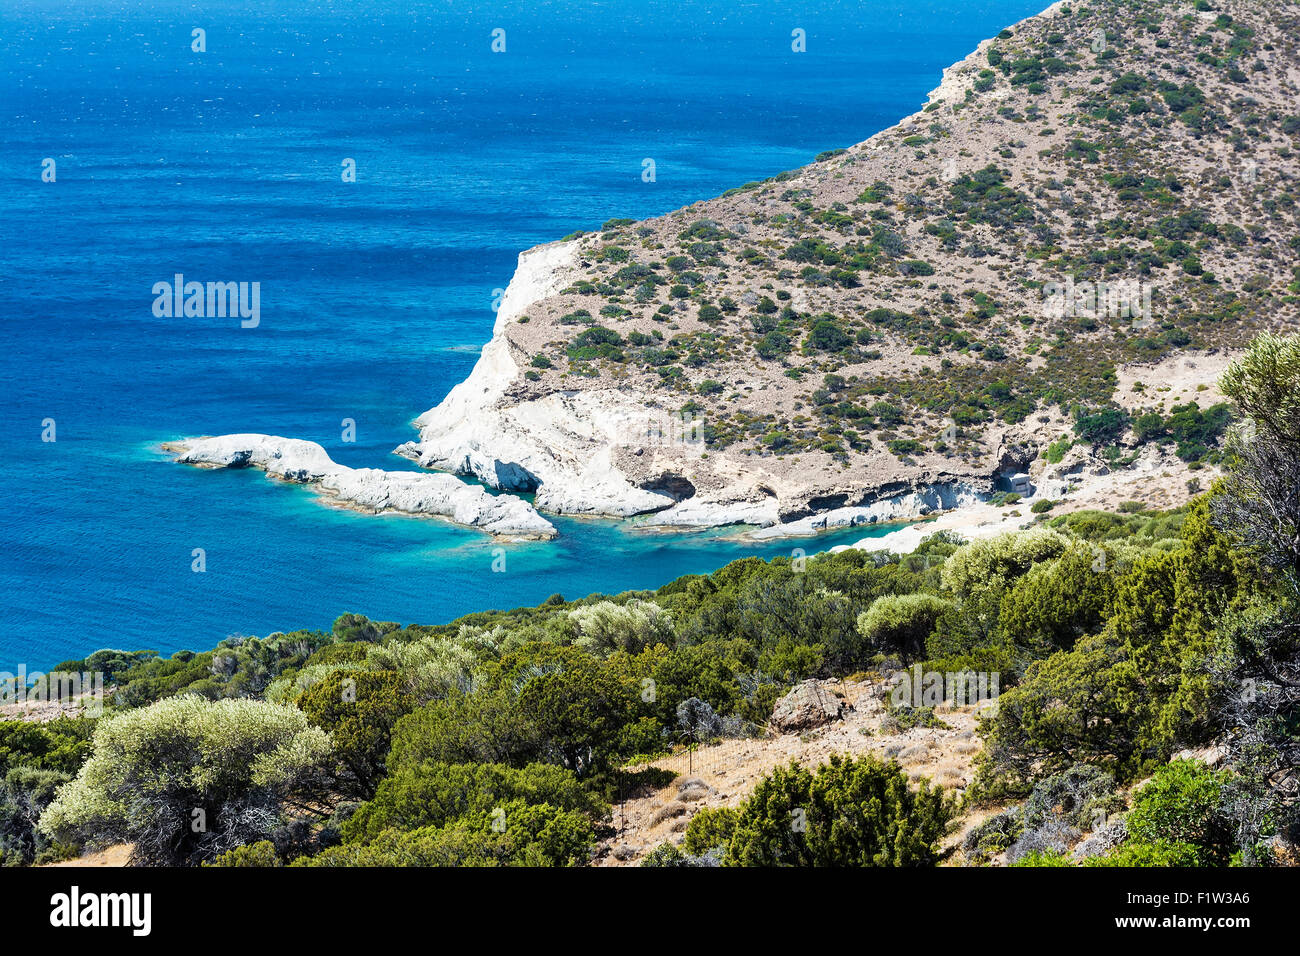 Panoramic view of Gerontas beach, Milos island, Cyclades, Greece Stock Photo